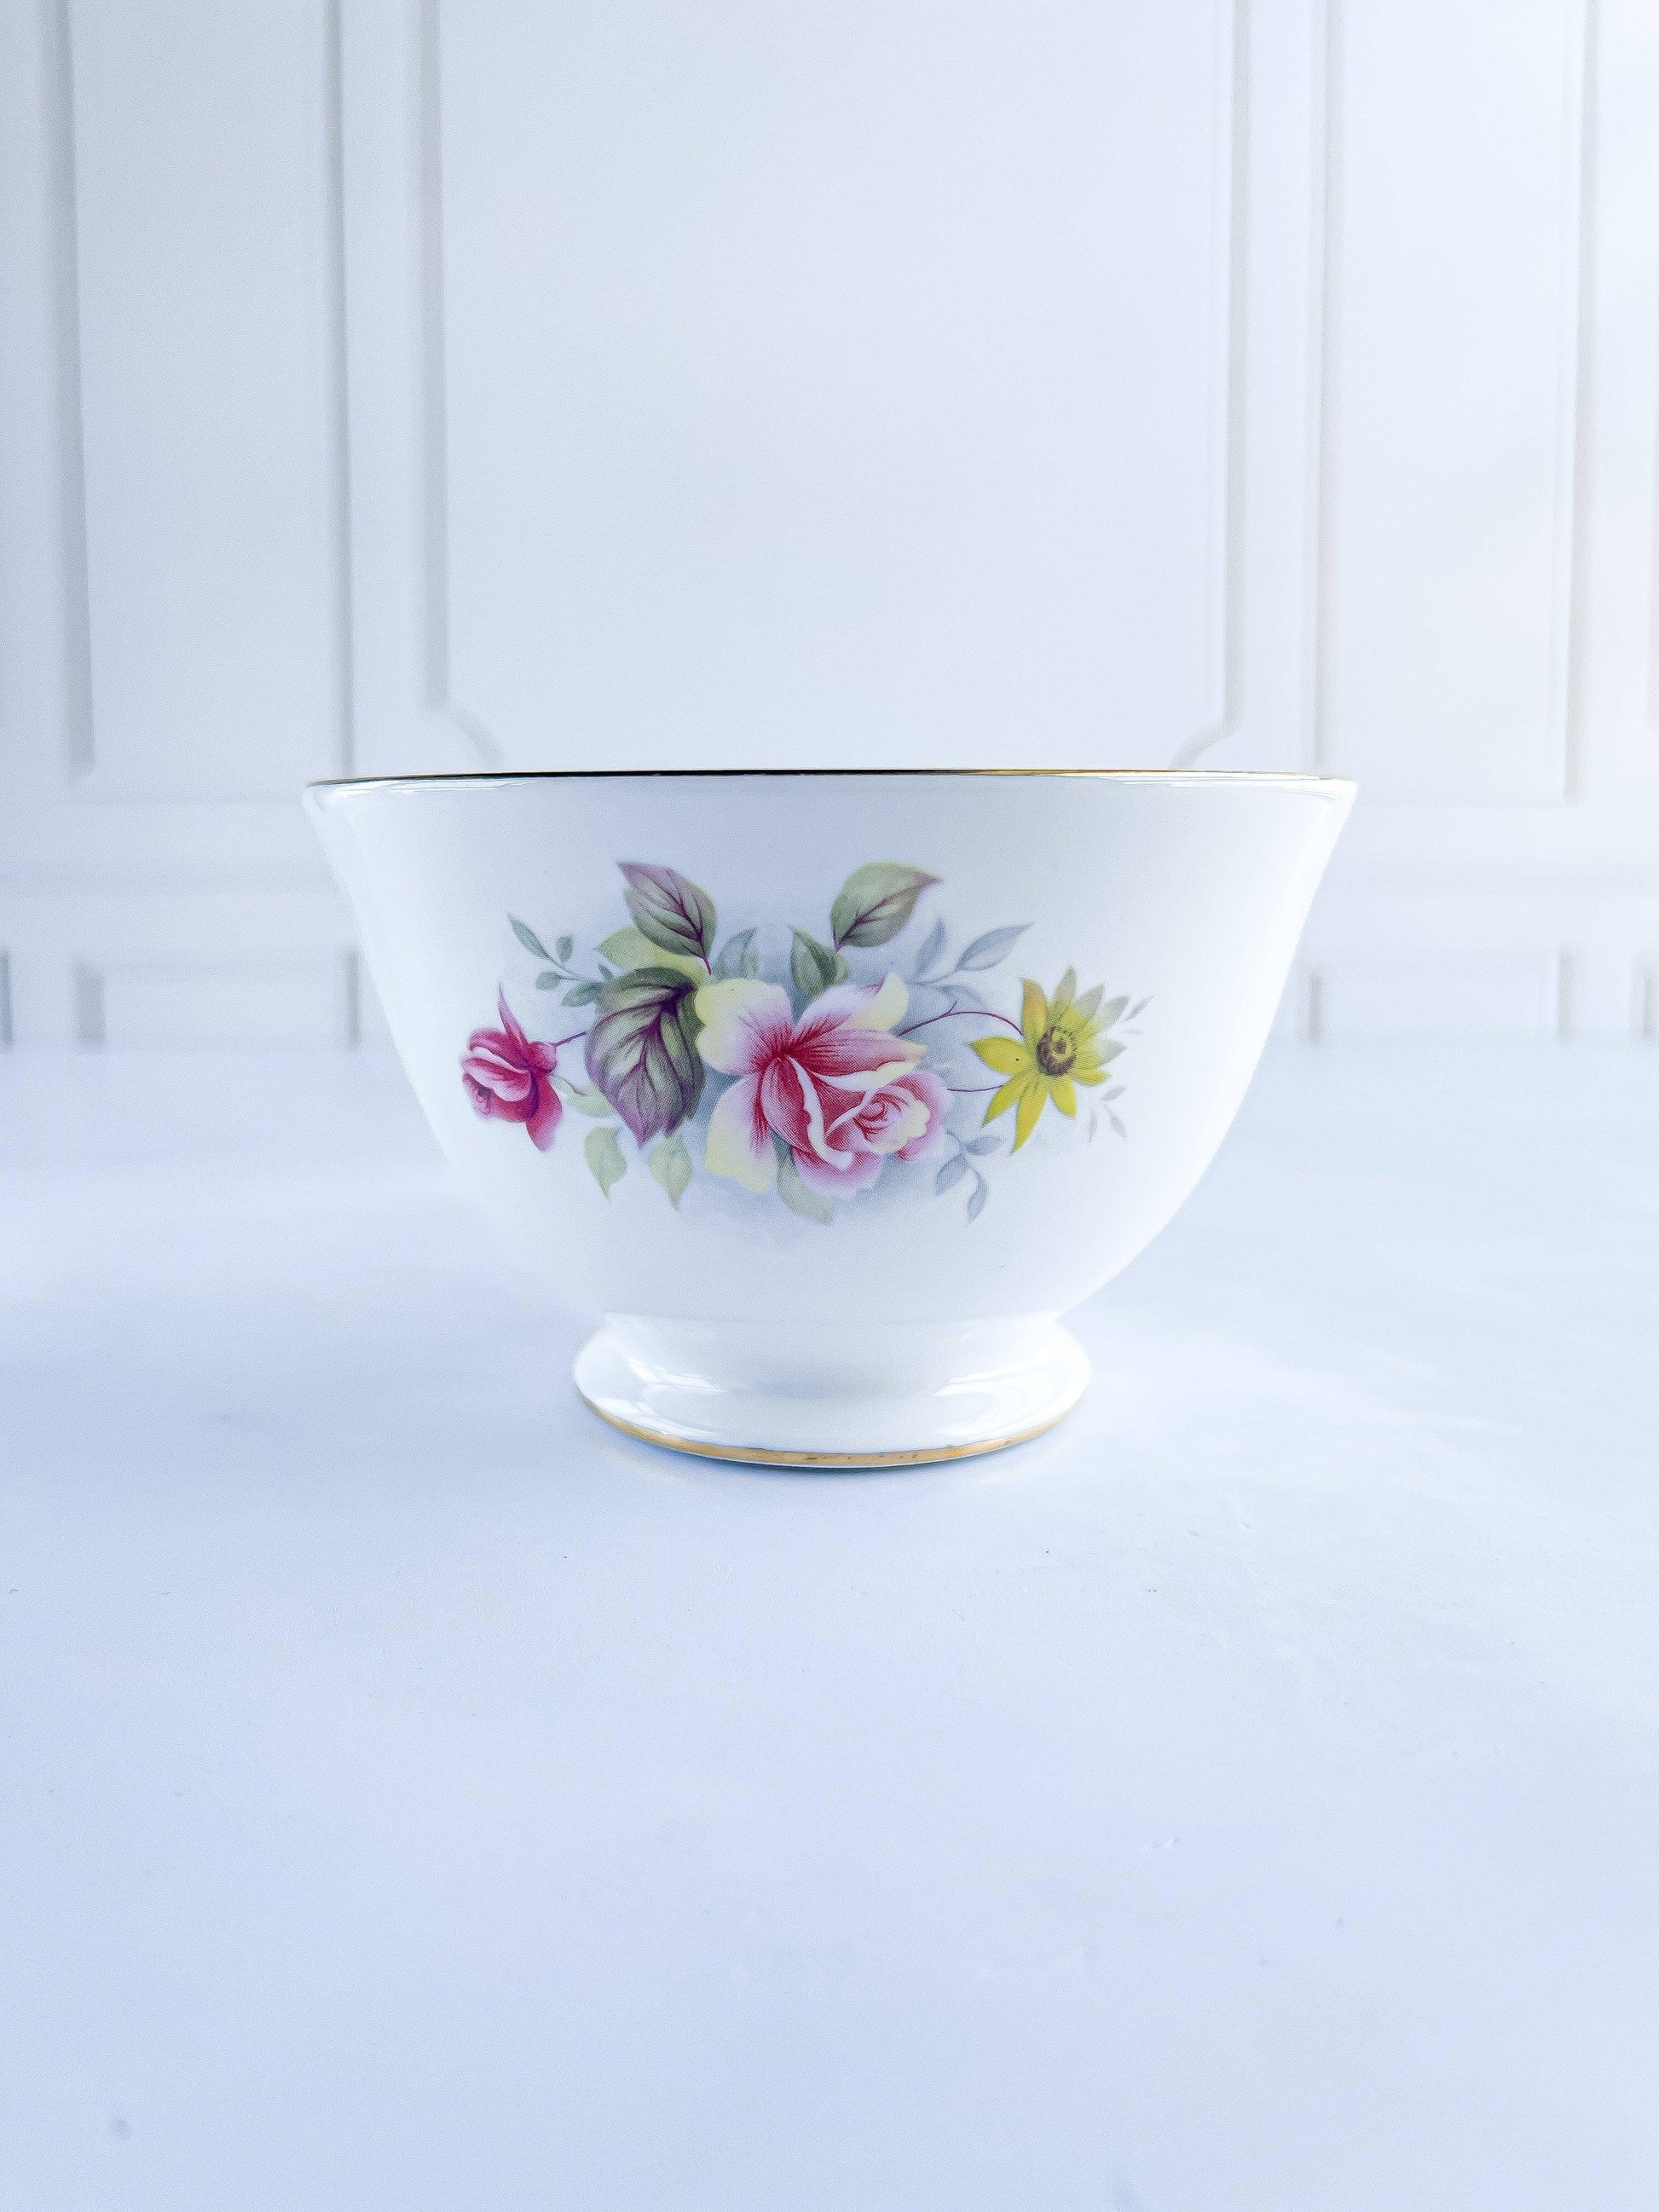 Queen Anne Vintage Floral Creamer & Sugar Set - Pink Roses - SOSC Home